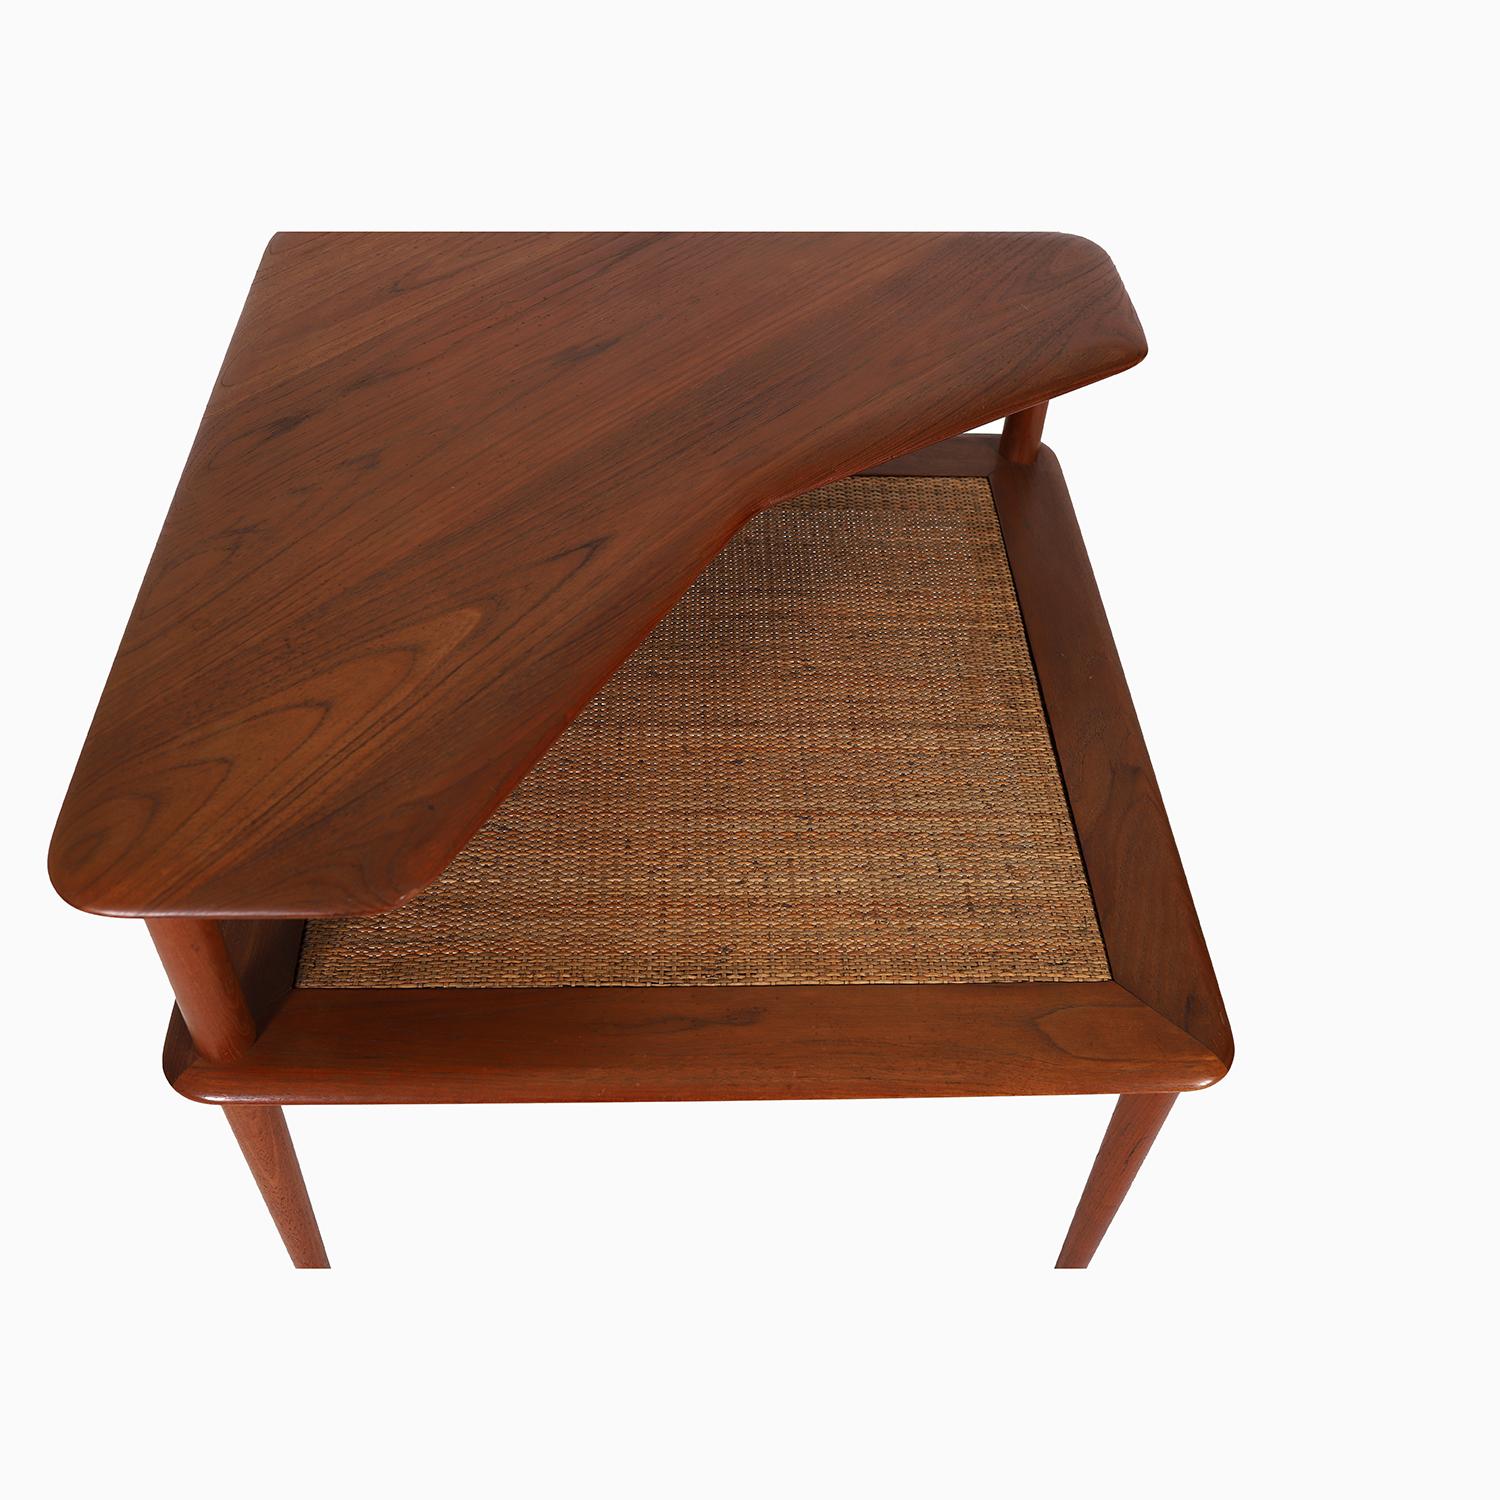 Une table d'appoint moderne danoise conçue par Peter Hvidt & Orla Molgaard-Nielsen et produite par France & Søn. Un design qui a été réalisé pour leur ensemble de canapé 